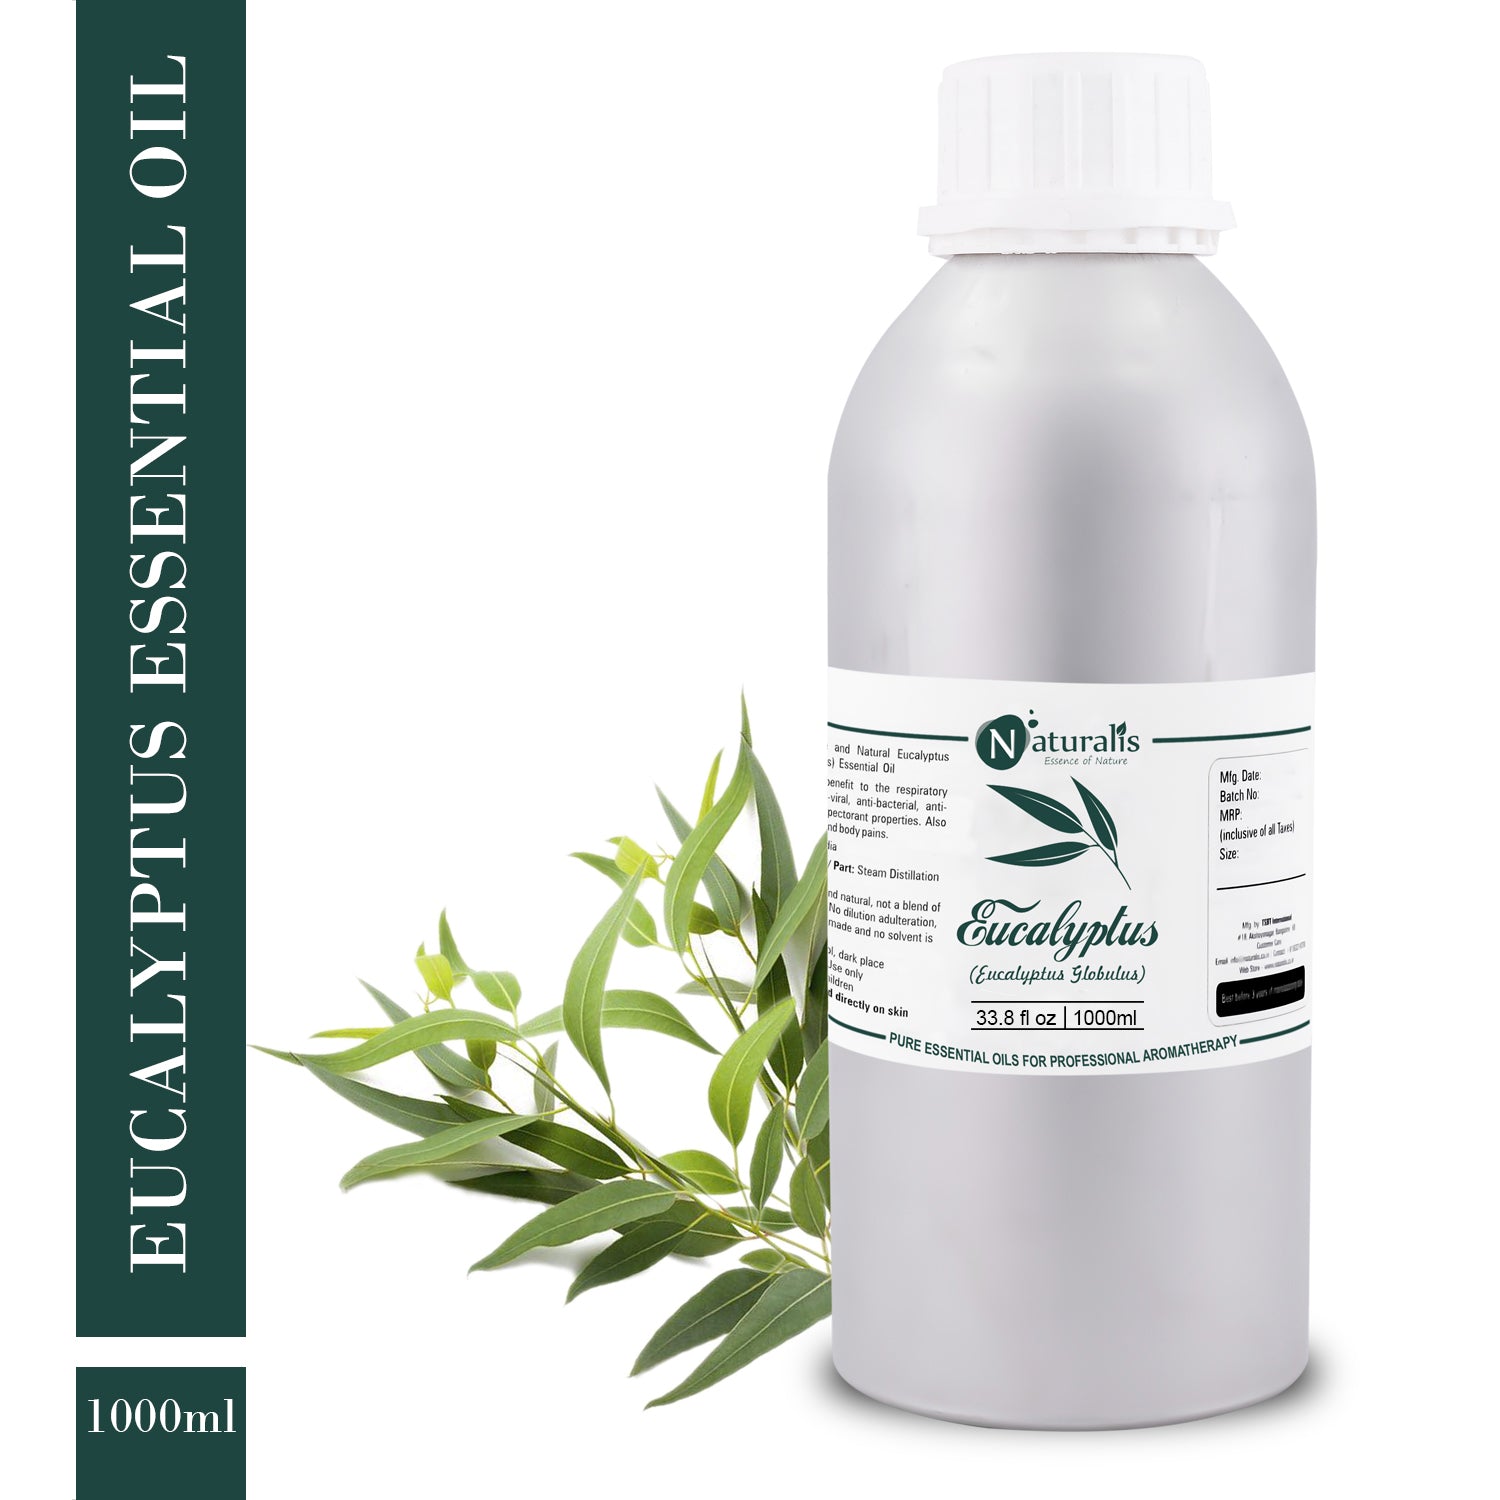 Eucalyptus Essential Oil by Naturalis - Pure & Natural - Naturalis